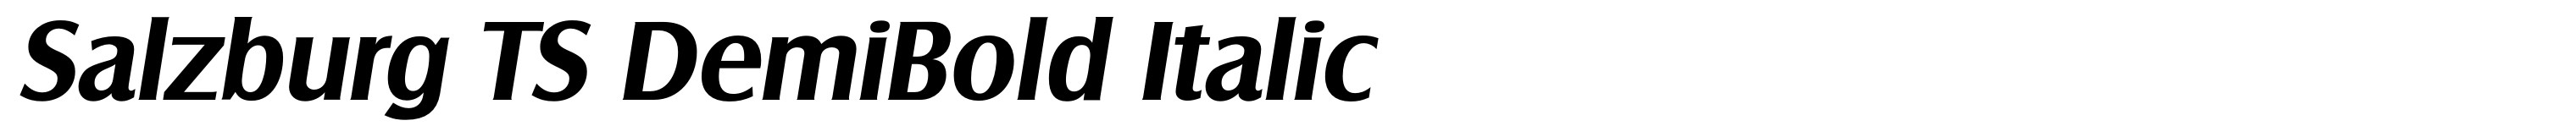 Salzburg TS DemiBold Italic